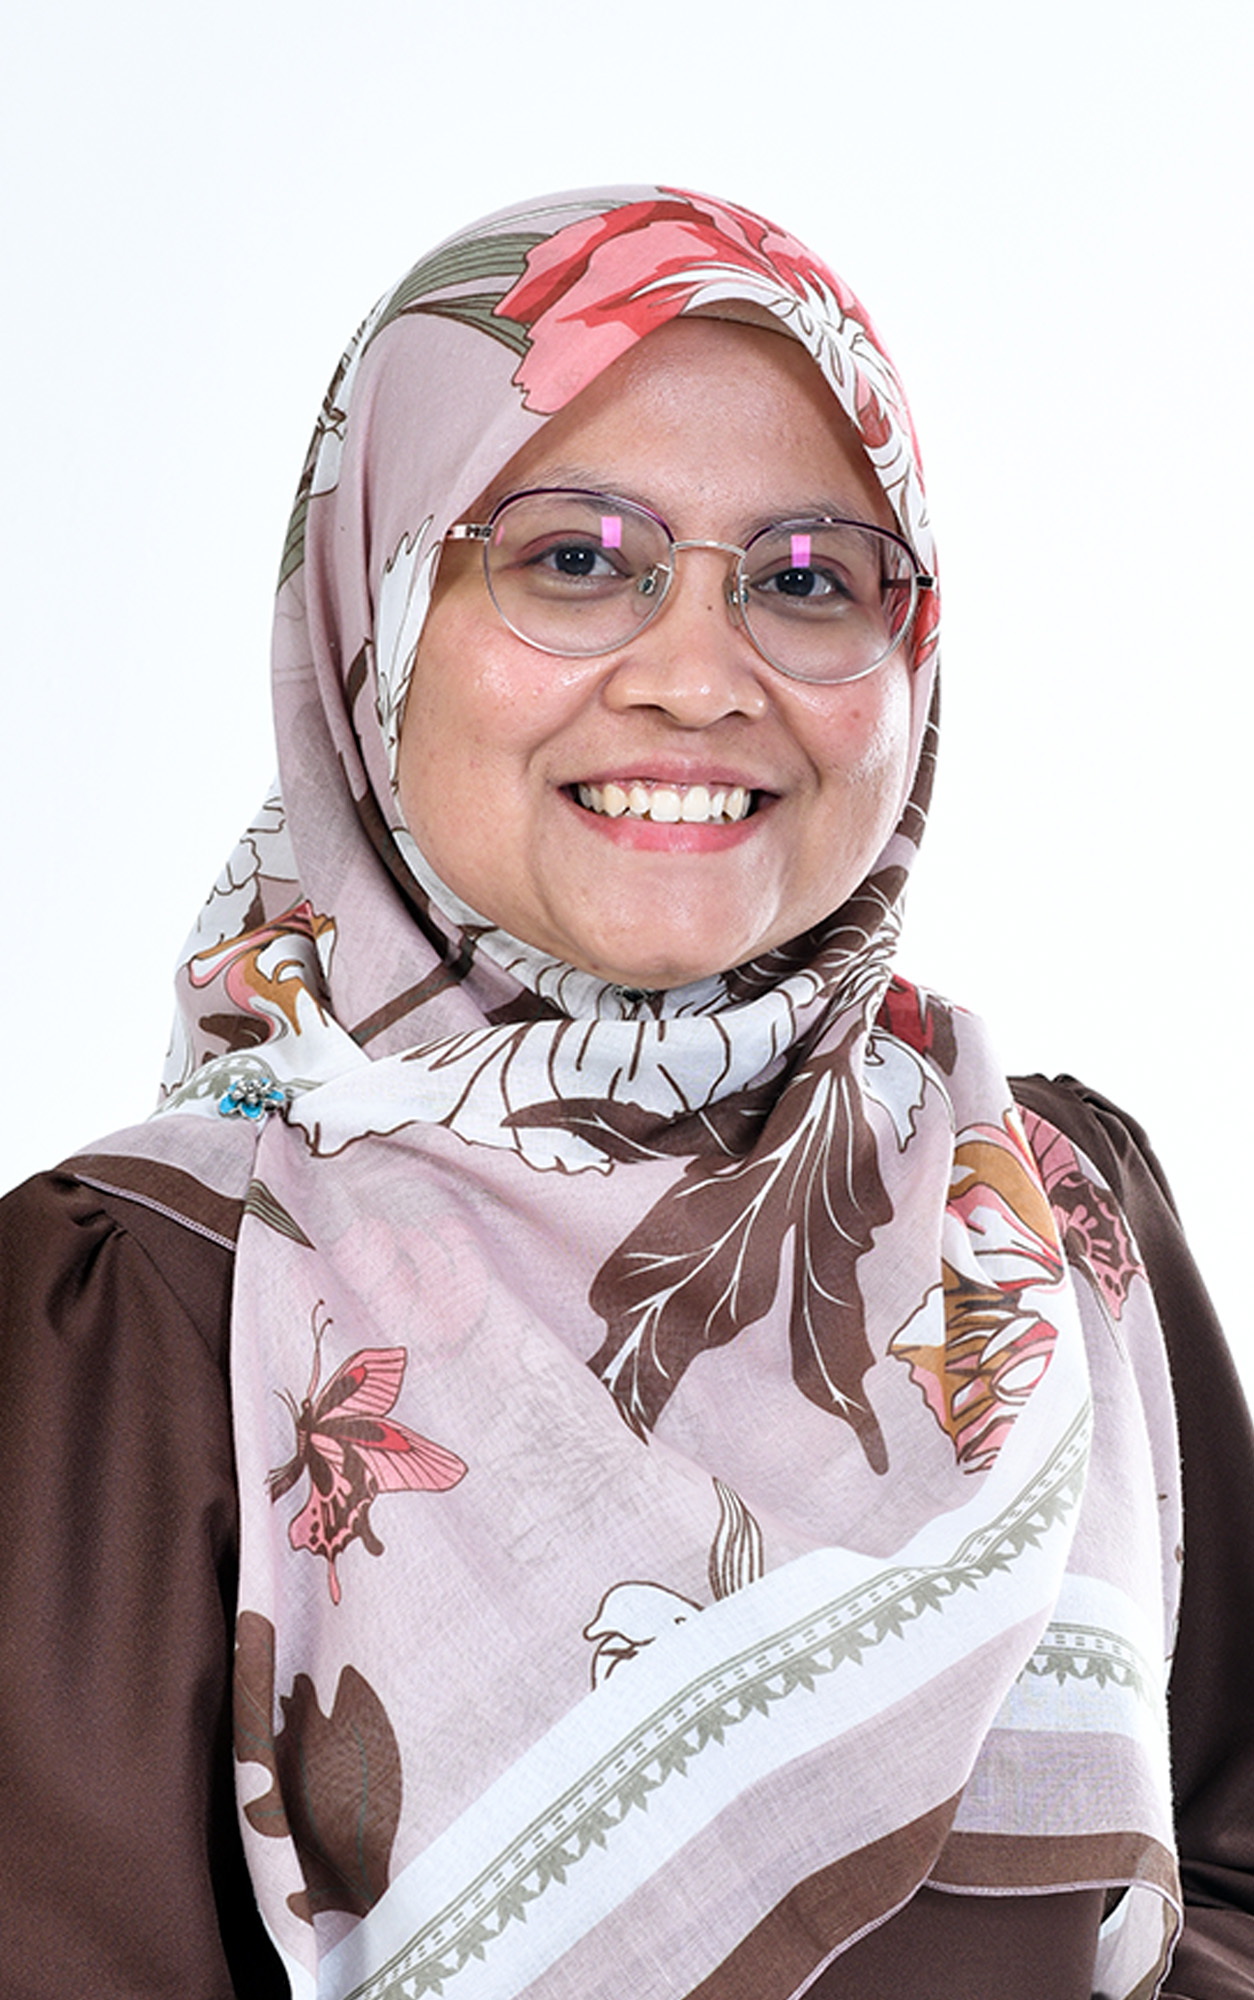 Siti Khadijah